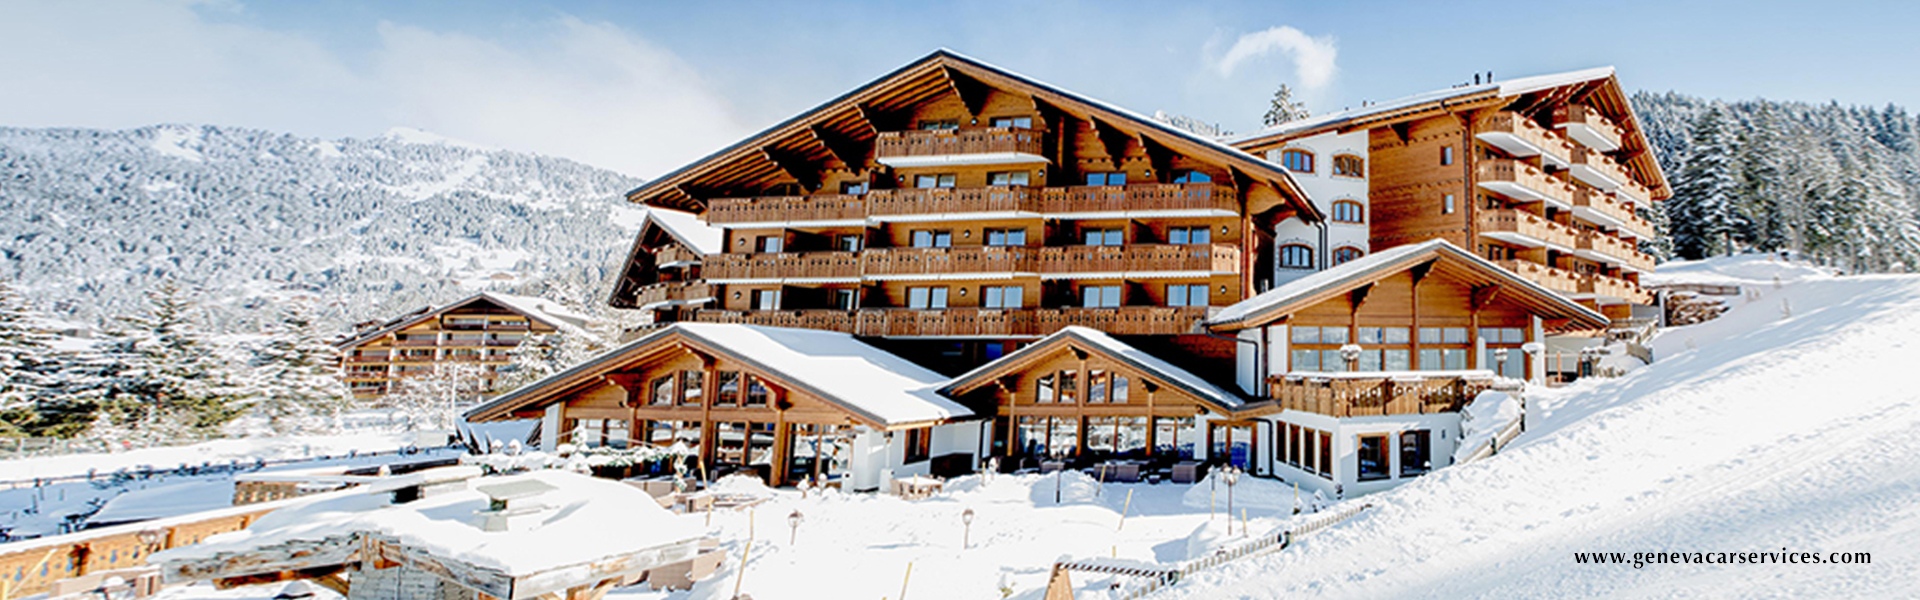 Geneva Ski Transfers | Private Ski Transfers from Geneva Airport